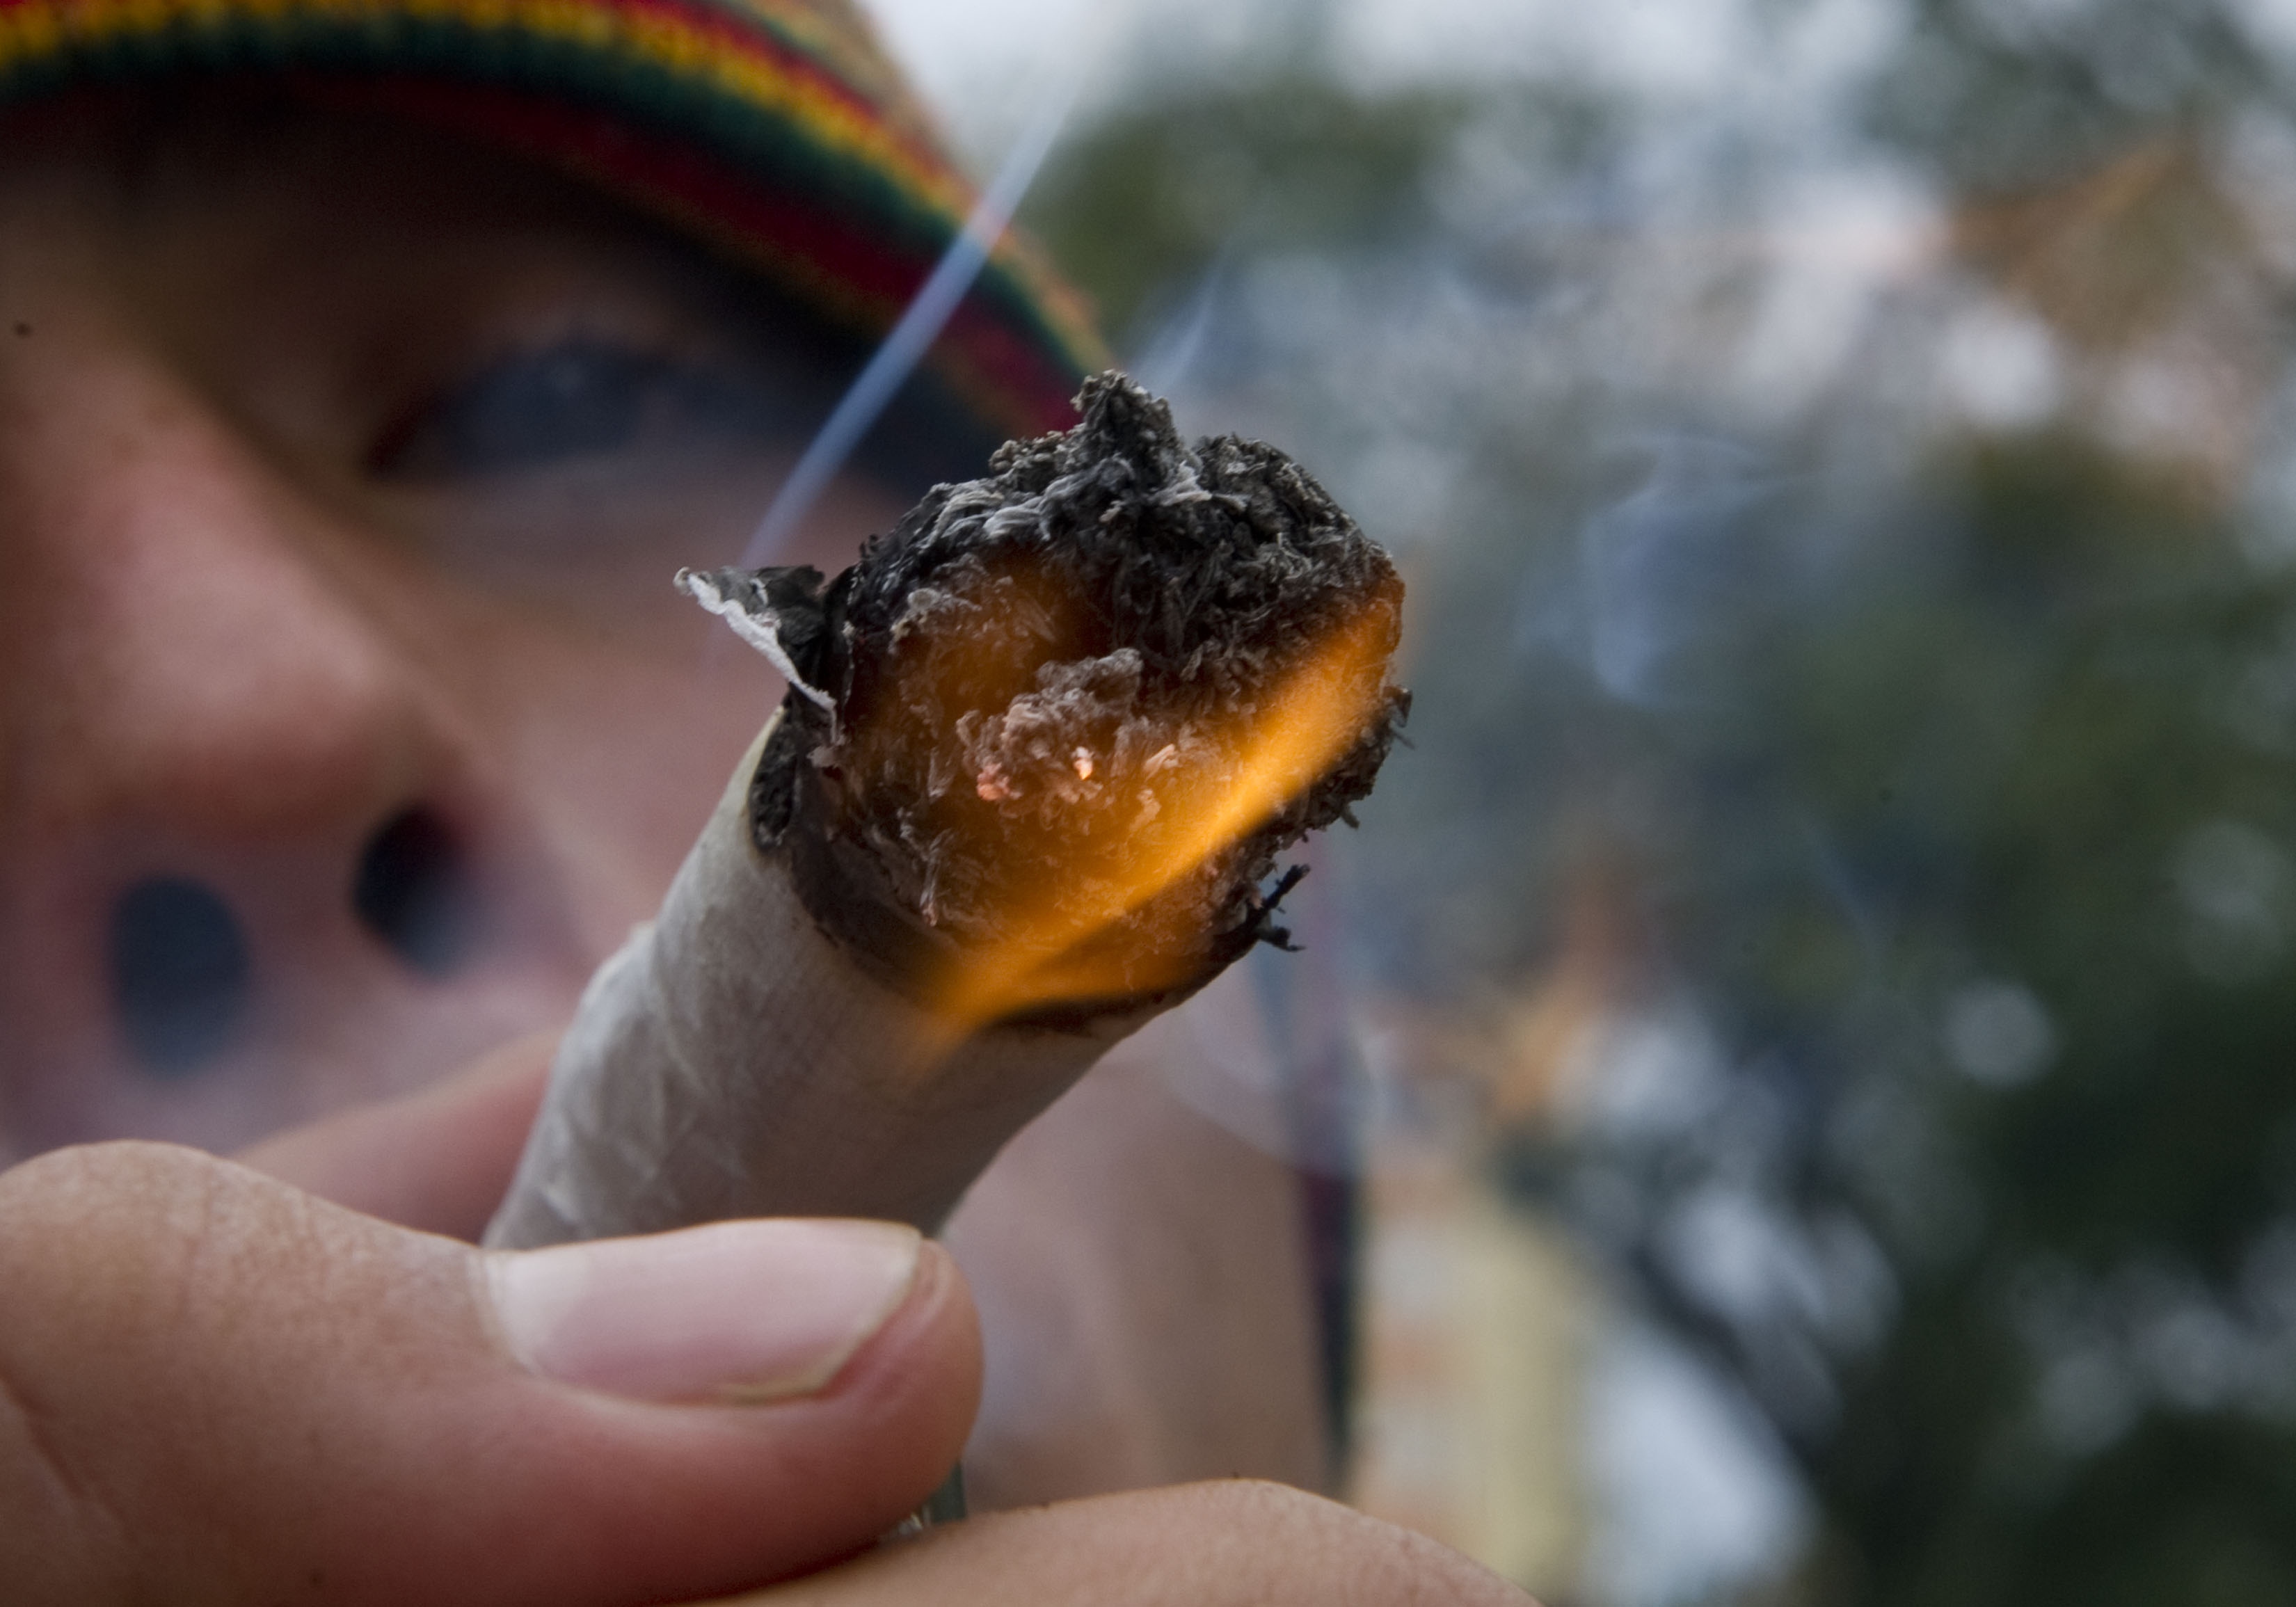 STUDIU: Cannabisul poate provoca schizofrenie si cancer. E de 20 ori mai periculos decat o tigara